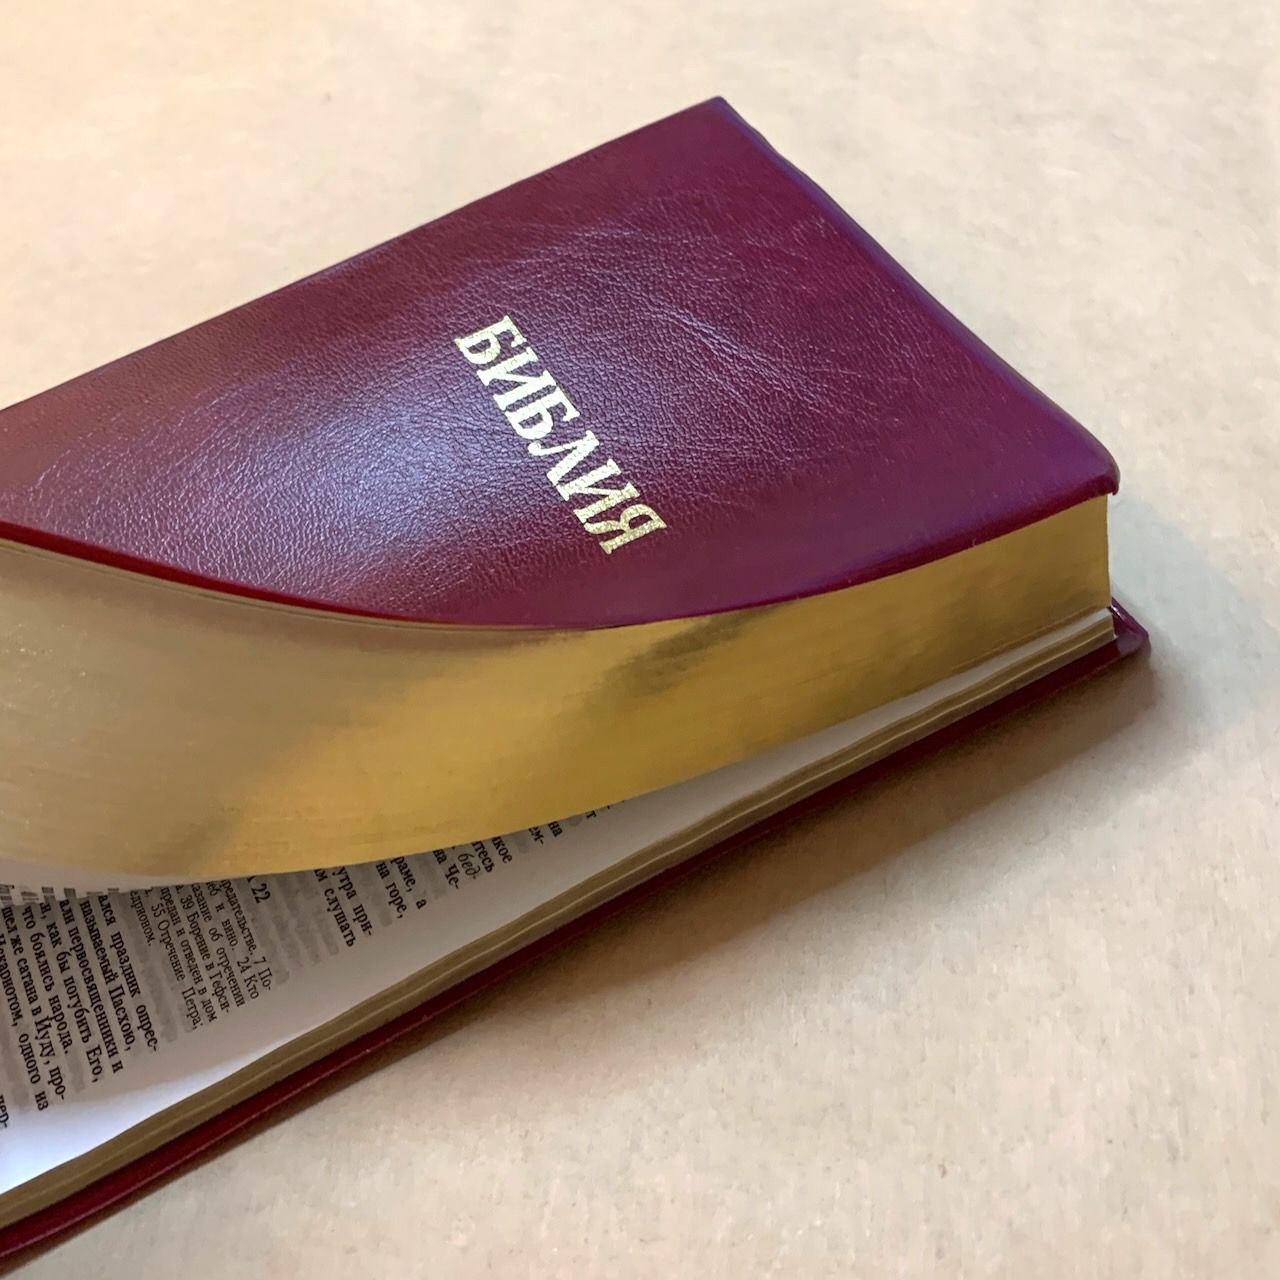 Библия — цвет бордо, переплет иск. кожи без индексов